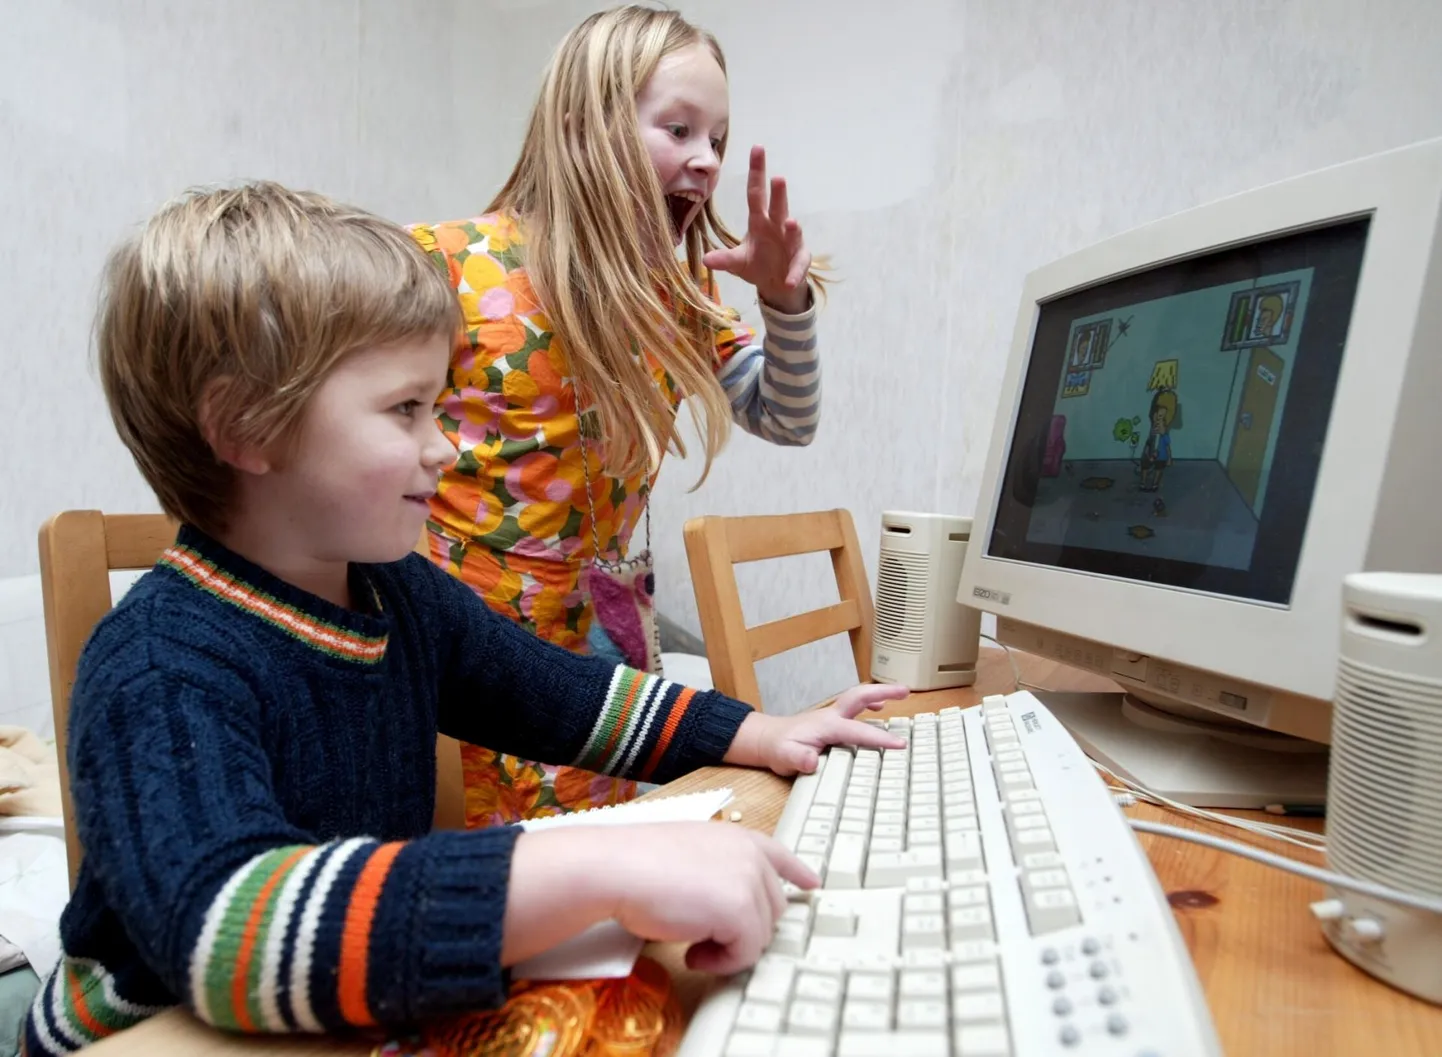 Õde-venda Lennart ja Laura arvutimänge mängimas.
Lapsevanemadi saavad neis kaasa lüüa.